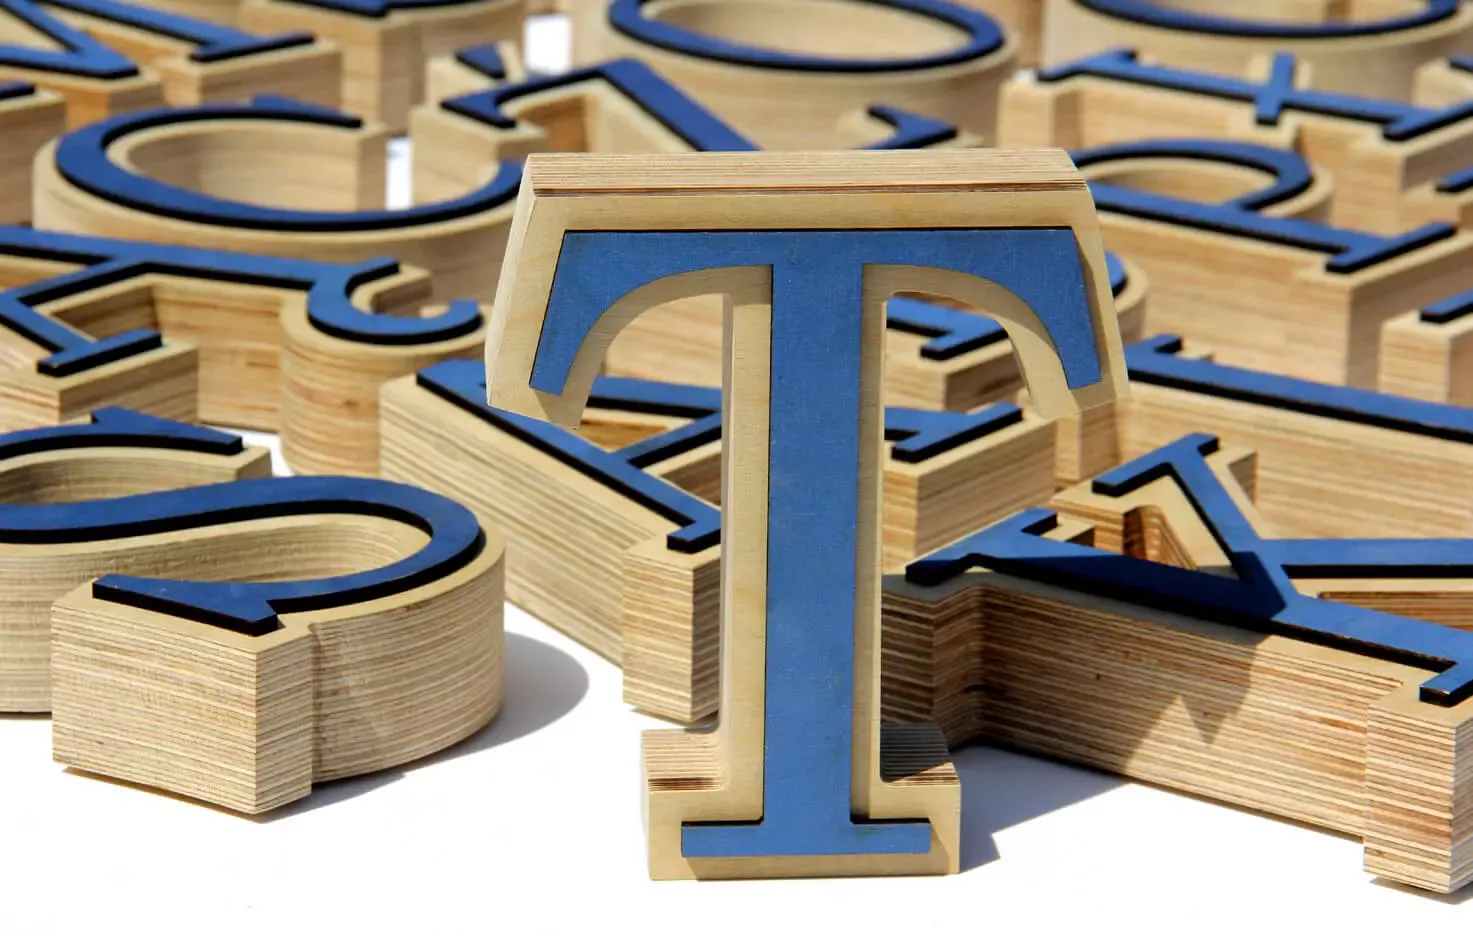 Drewniany alfabet - litera T wykonana z drewna